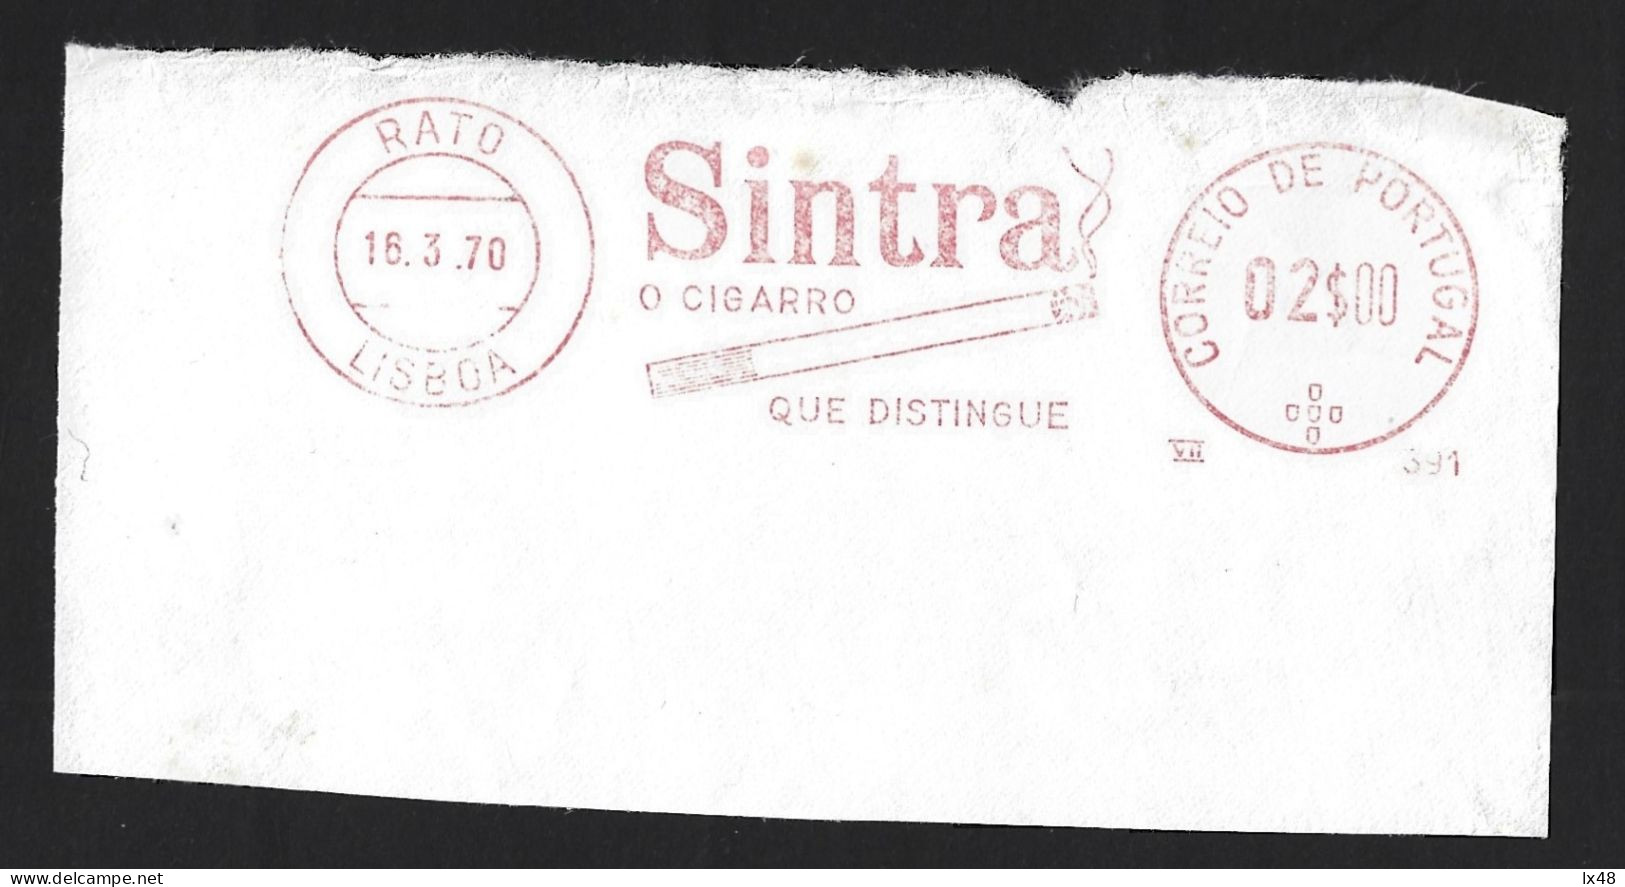 'Sintra' Brand Tobacco Cigarette. Banner On Sintra Tobacco, In 1970. The Cigarette That Distinguishes. Cigarro Sintra - Tabak & Cigaretten